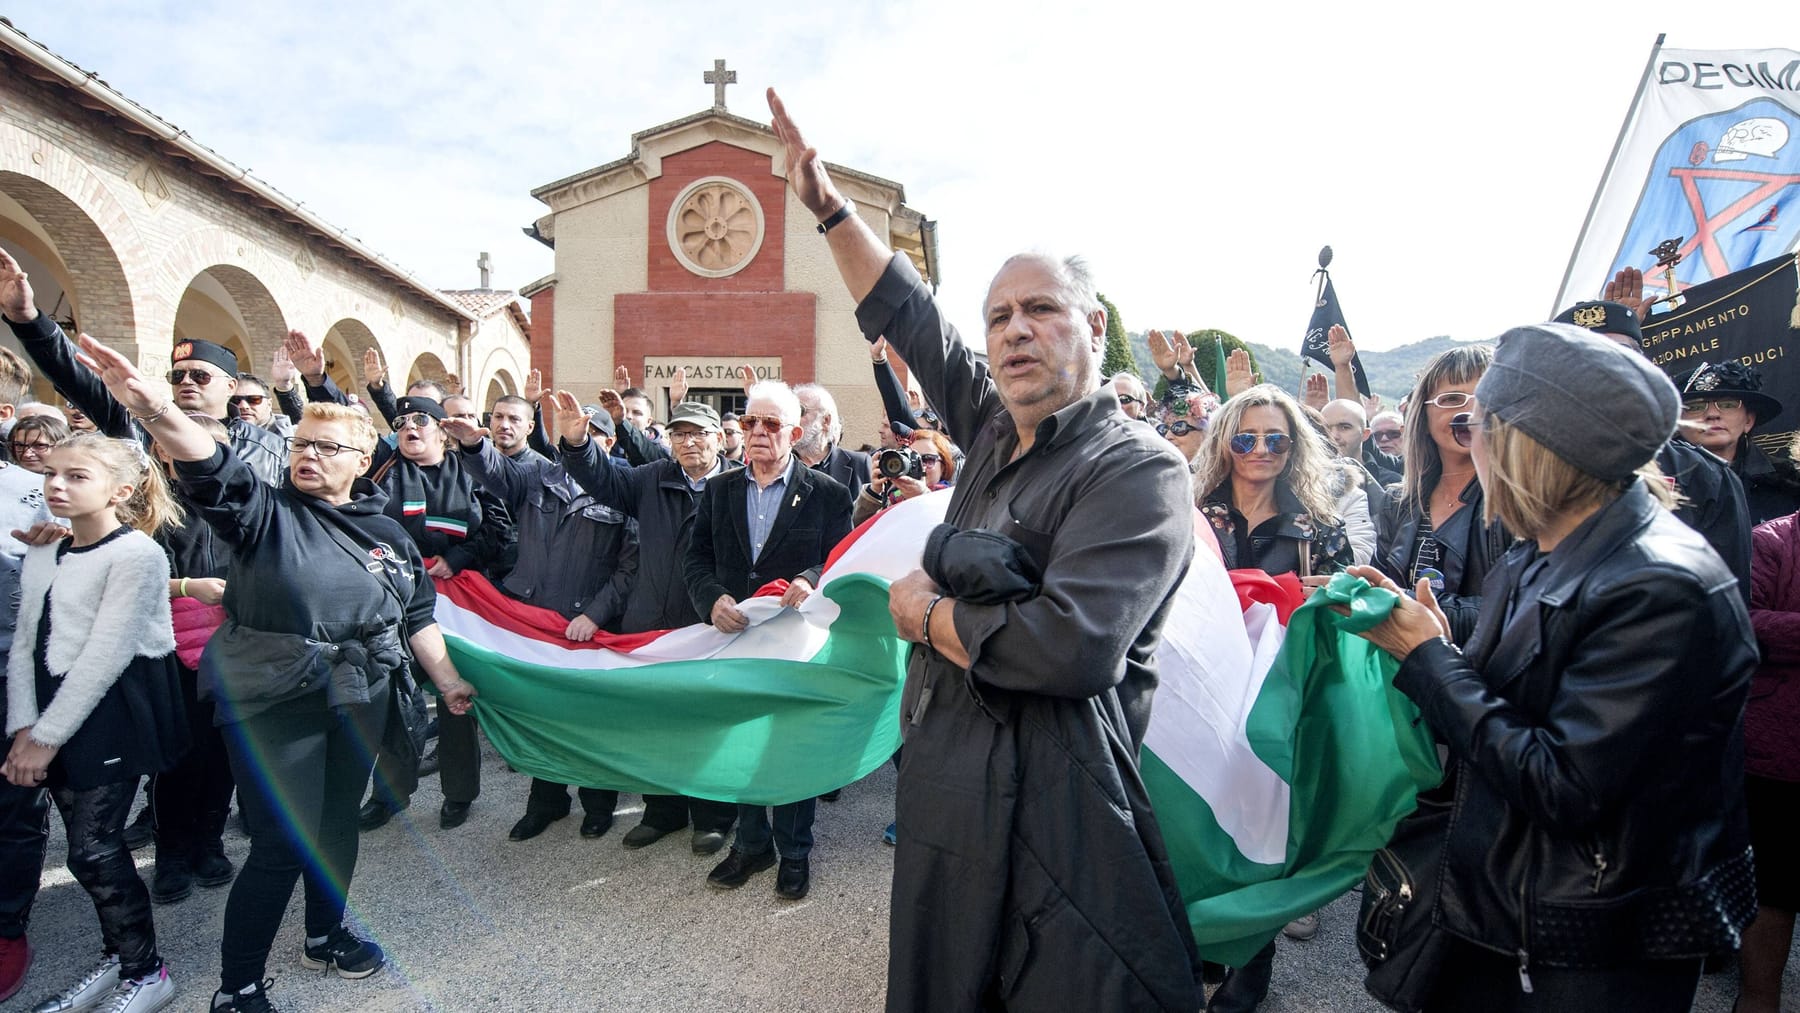 In Italia il saluto fascista è consentito secondo una sentenza del tribunale